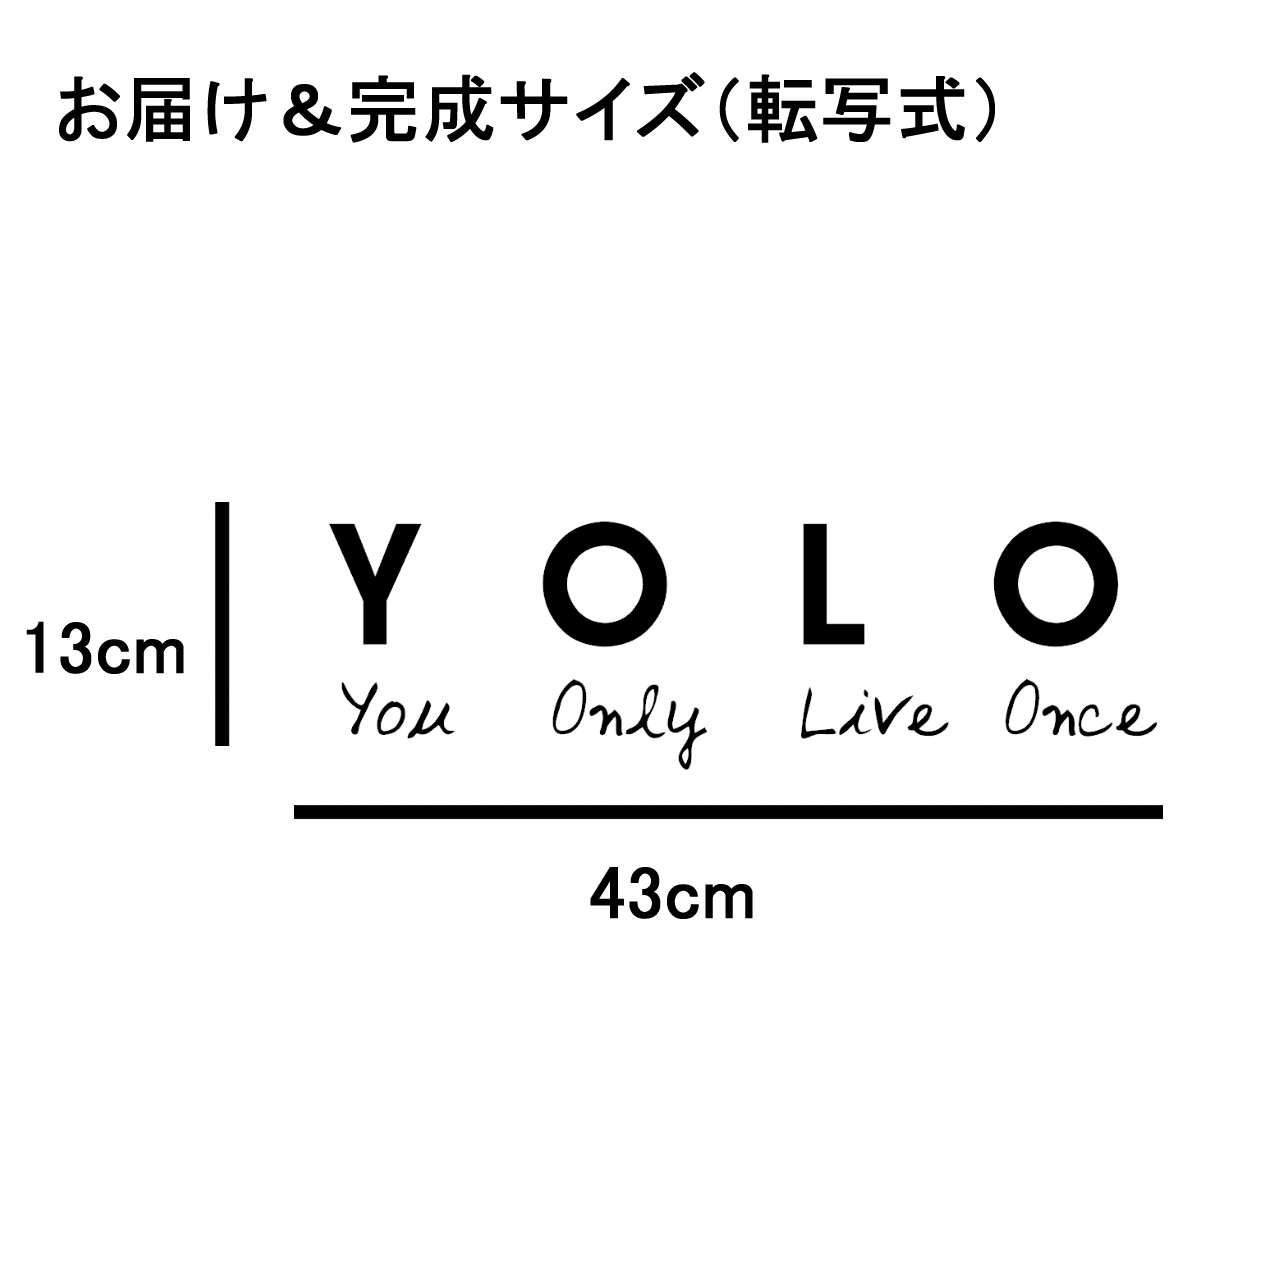 ウォールステッカー 名言 Yolo You Only Live Once 黒 光沢 Iby アイバイ ウォールステッカー 通販